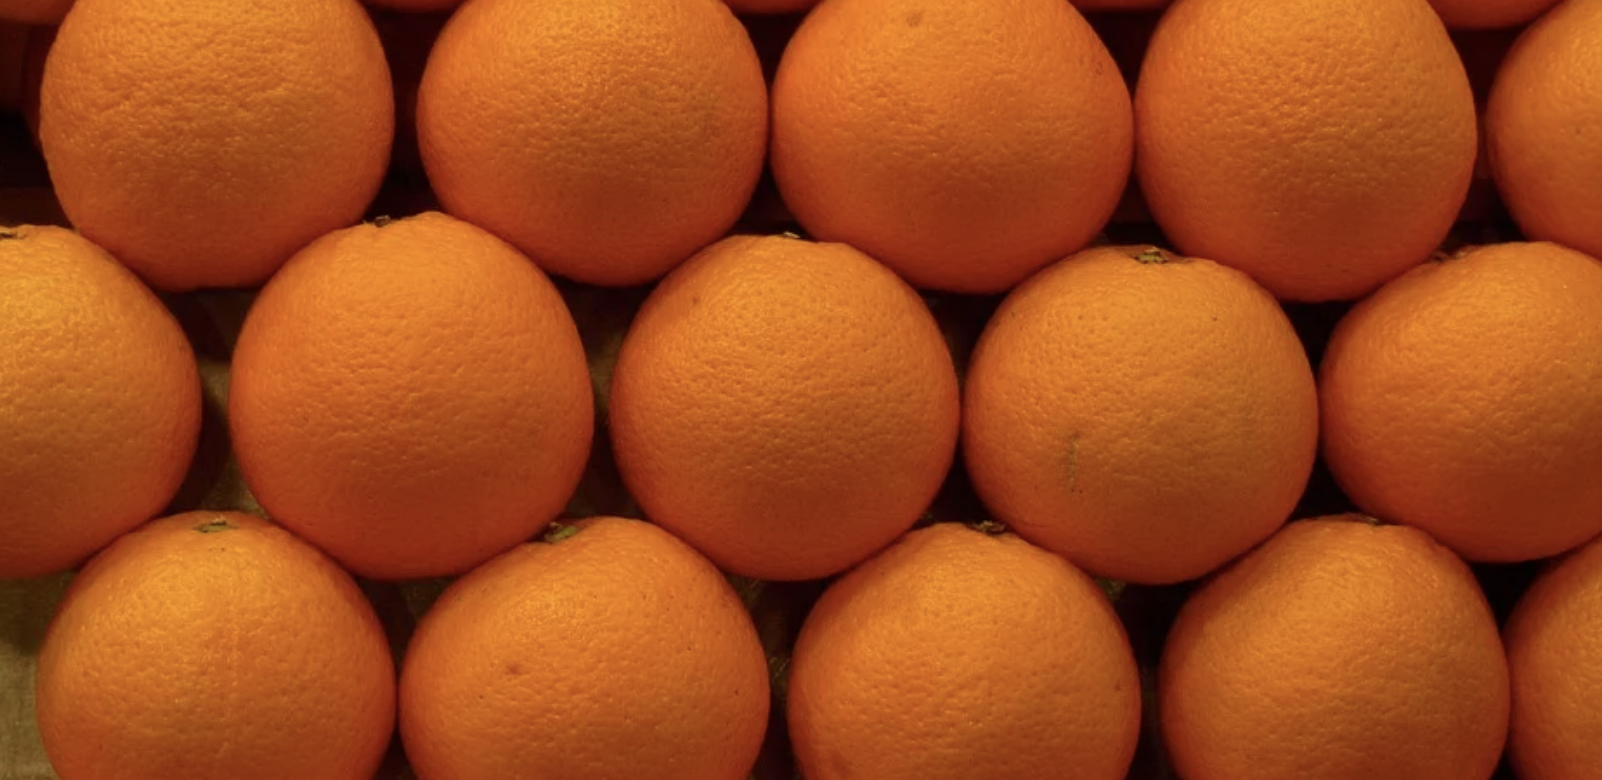 L’Egypte conforte pour la deuxième année consécutive sa place de premier exportateur mondial d’oranges